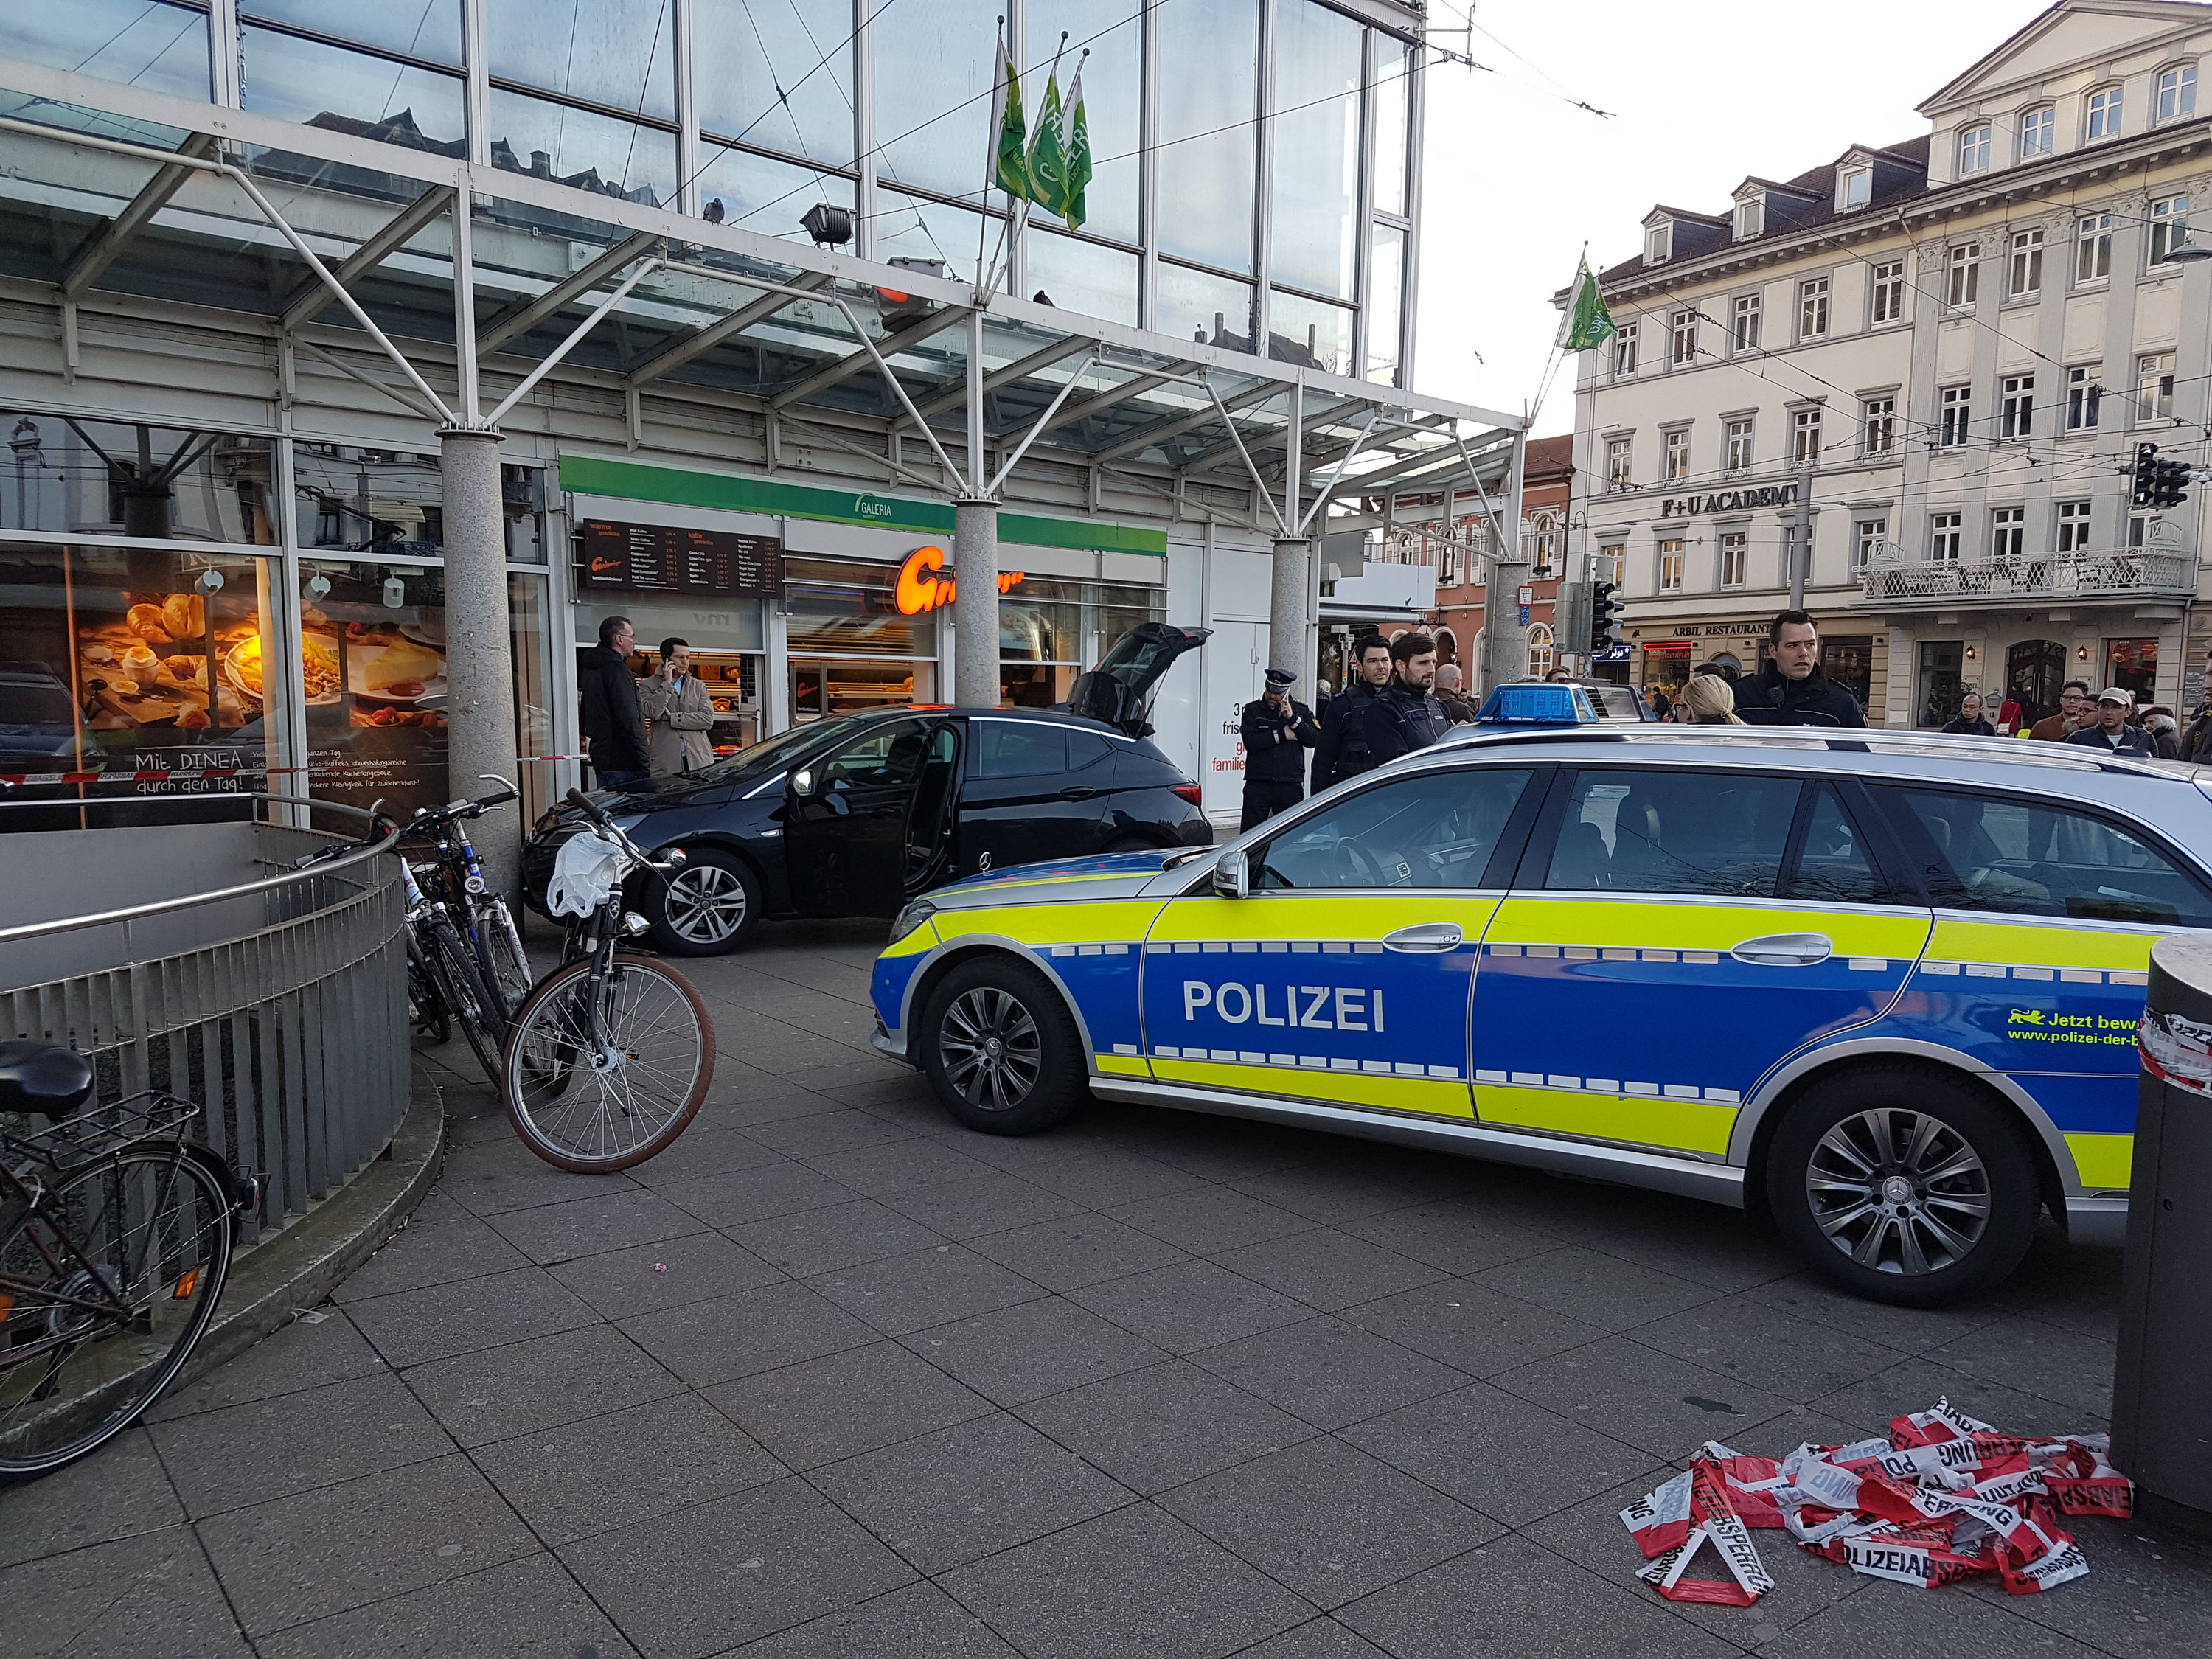 Polizeifahrzeug und Pkw des Amokfahrers in Heidelberg | Bildquelle: dpa